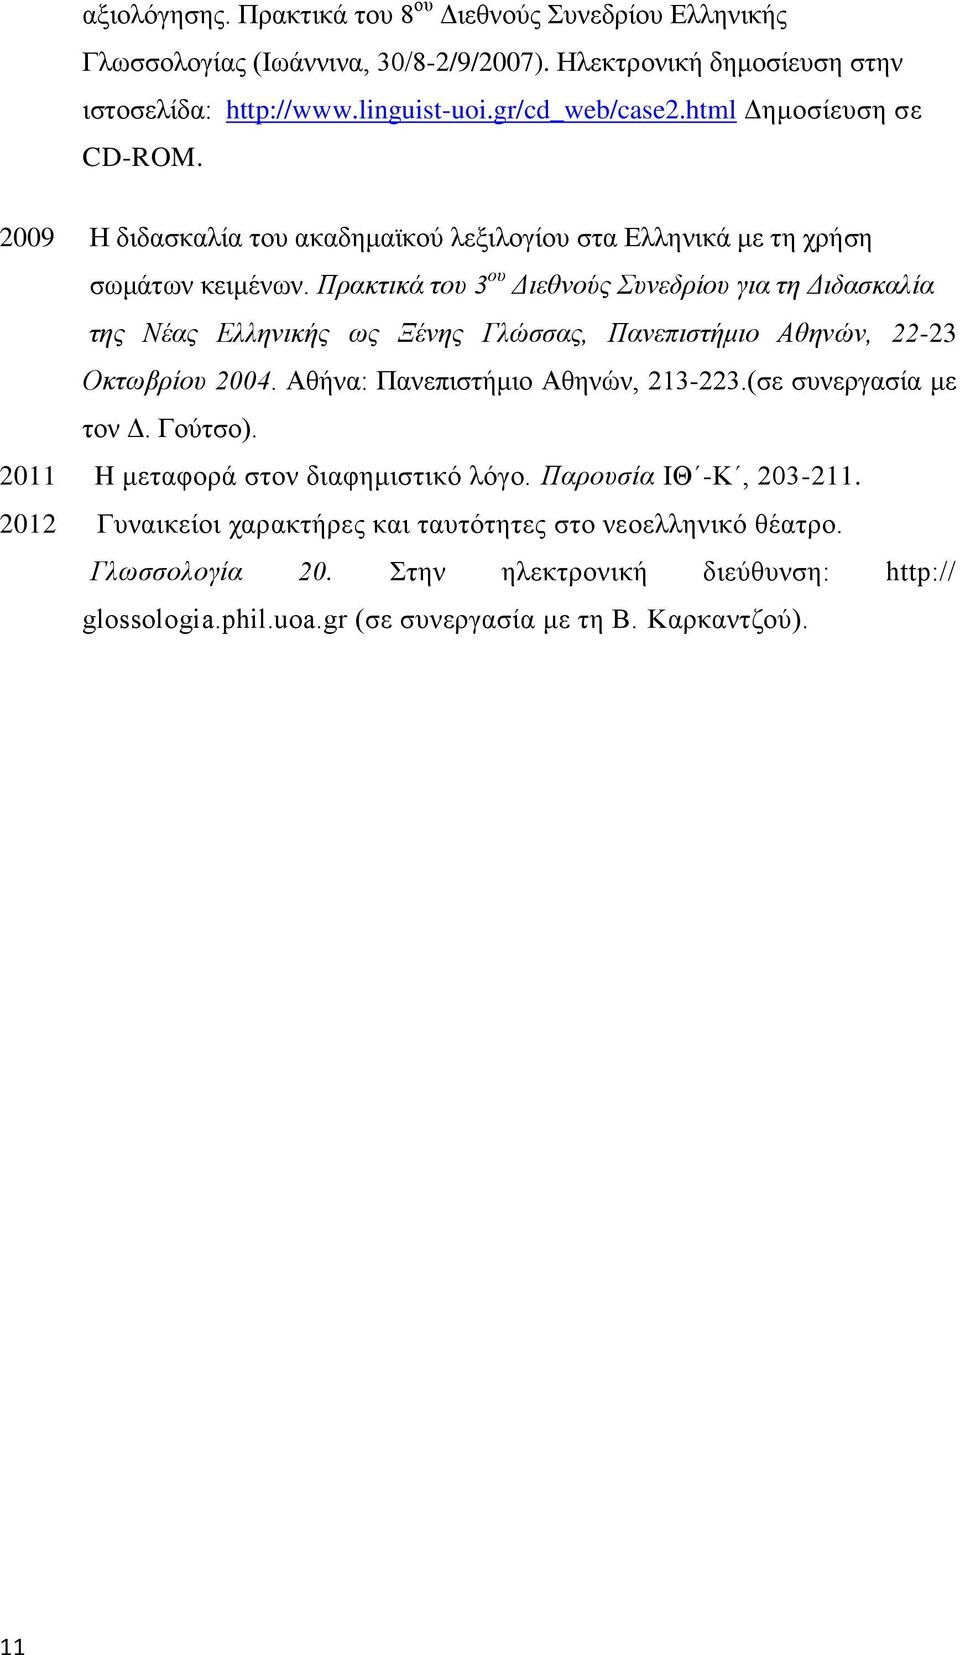 Πρακτικά του 3 ου Διεθνούς Συνεδρίου για τη Διδασκαλία της Νέας Ελληνικής ως Ξένης Γλώσσας, Πανεπιστήμιο Αθηνών, 22-23 Οκτωβρίου 2004. Αθήνα: Πανεπιστήμιο Αθηνών, 213-223.